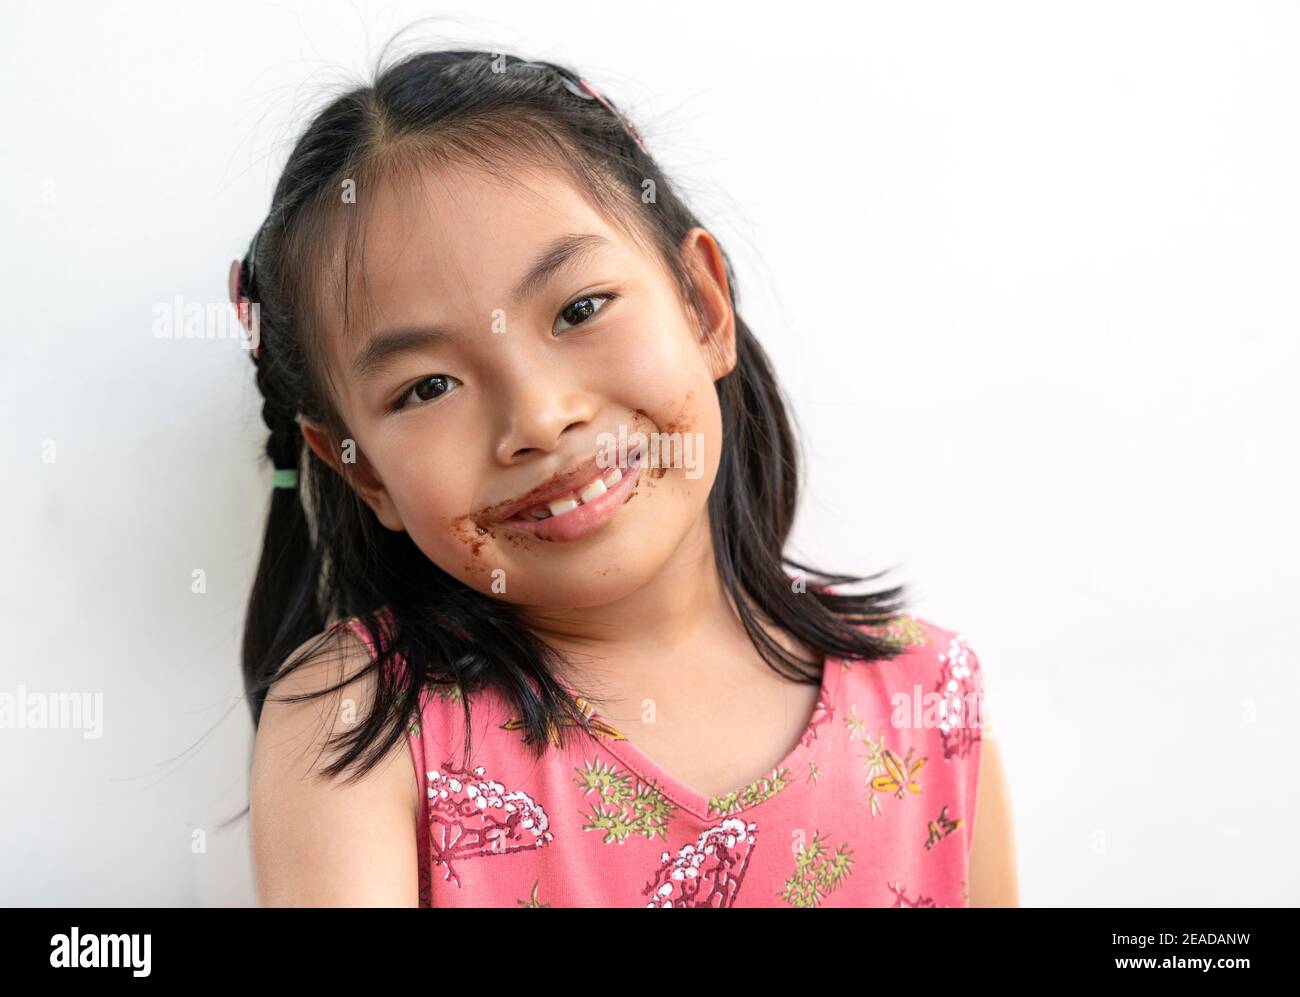 Portrait schönes Kind Mädchen mit Schokolade um den Mund, großes Lächeln auf niedlichen Gesicht, schwarze Haare, trägt schöne rosa Kleid. Schönes asiatisches Kind Stockfoto